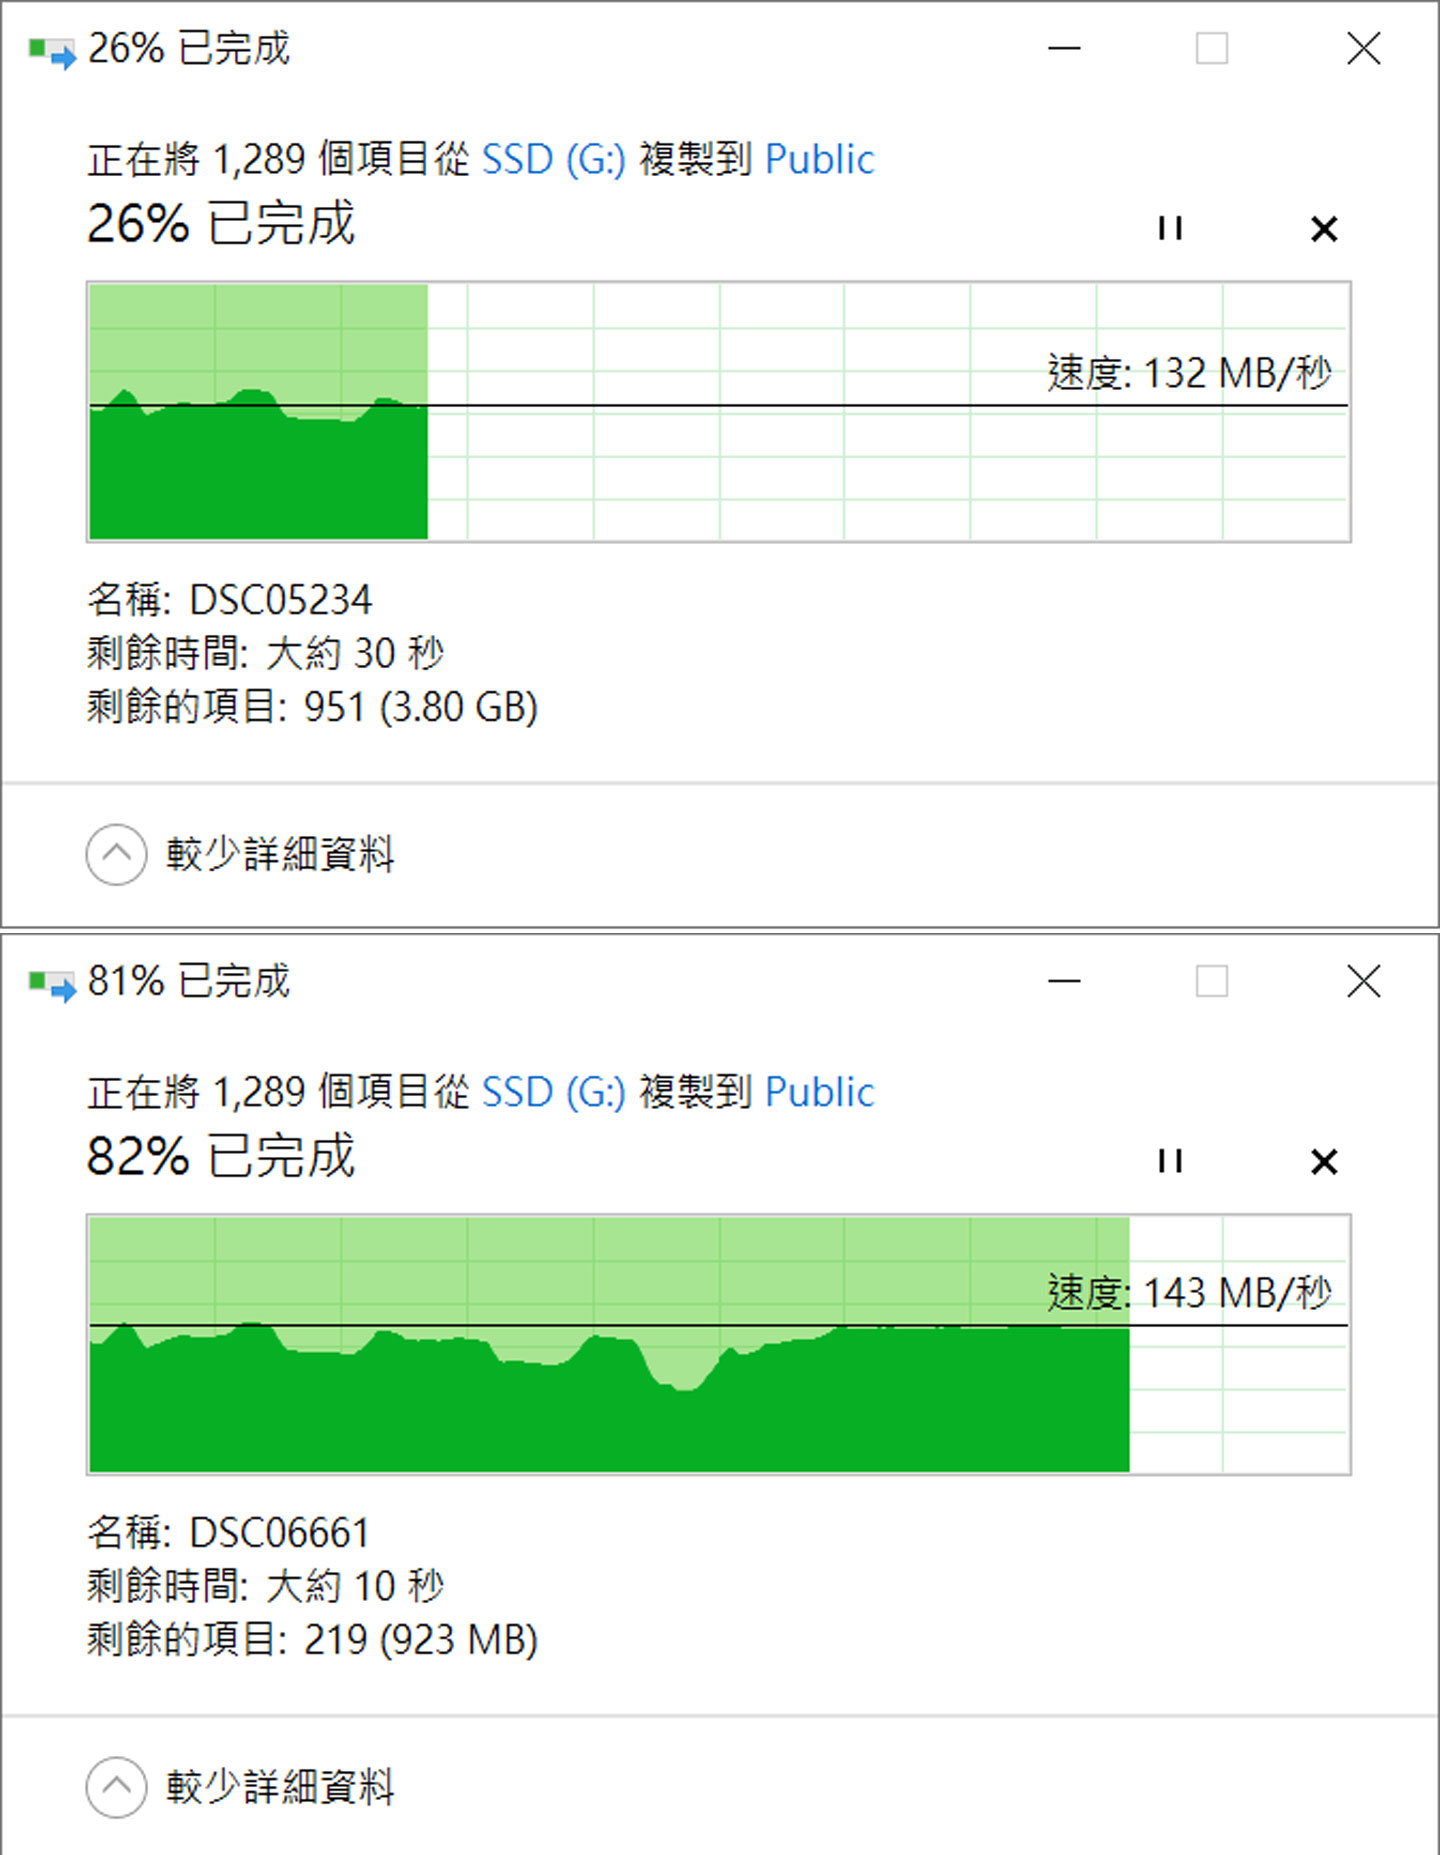 實際透過 SMB 的方式從電腦端傳輸 5G 多檔資料夾至 安裝 Toshiba MG10 20TB 版的 NQNAP TS-1655 的共用資料夾，傳輸前後速度落在 132 MB/s - 143 MB/s 之間。